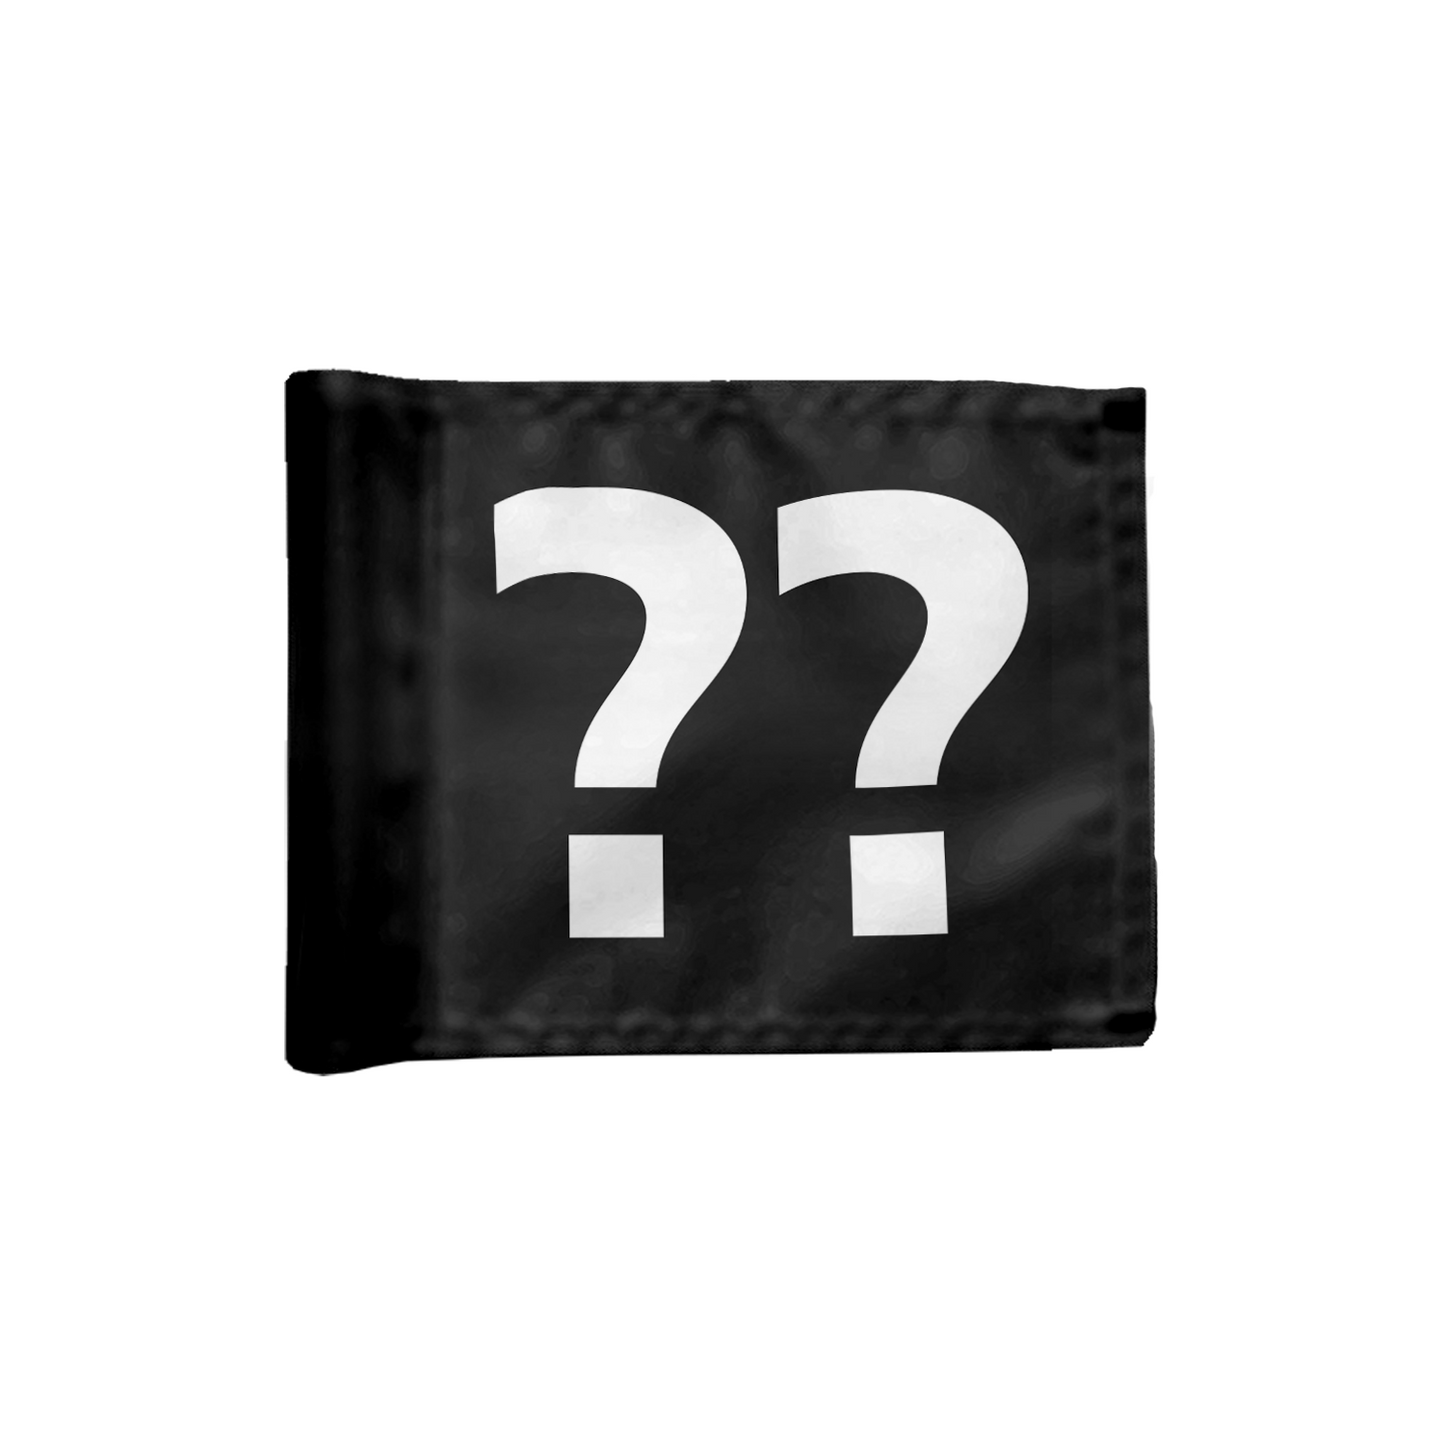 Stykvis puttinggreen flag, i sort med valgfrit hulnummer, 200 gram flagdug